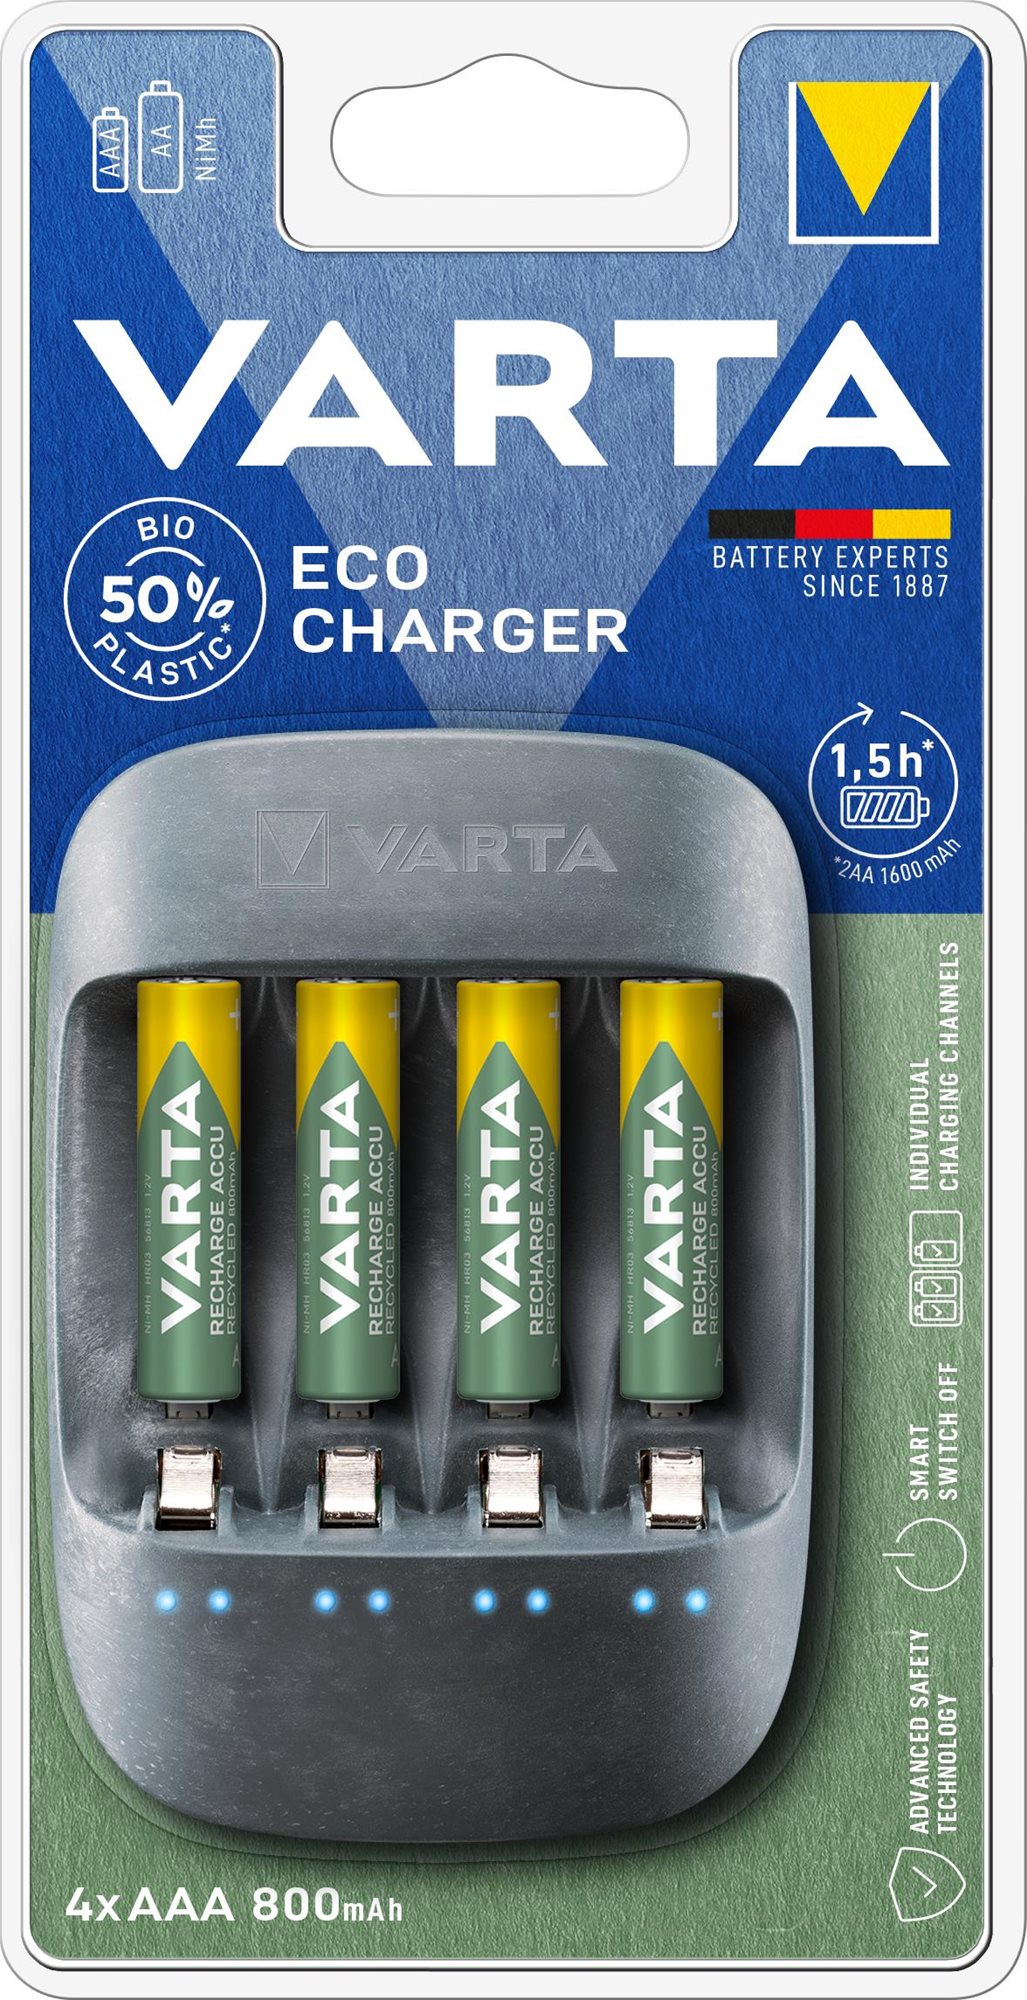 VARTA Eco Charger Töltő + 4 AAA 800 mAh Reycled R2U